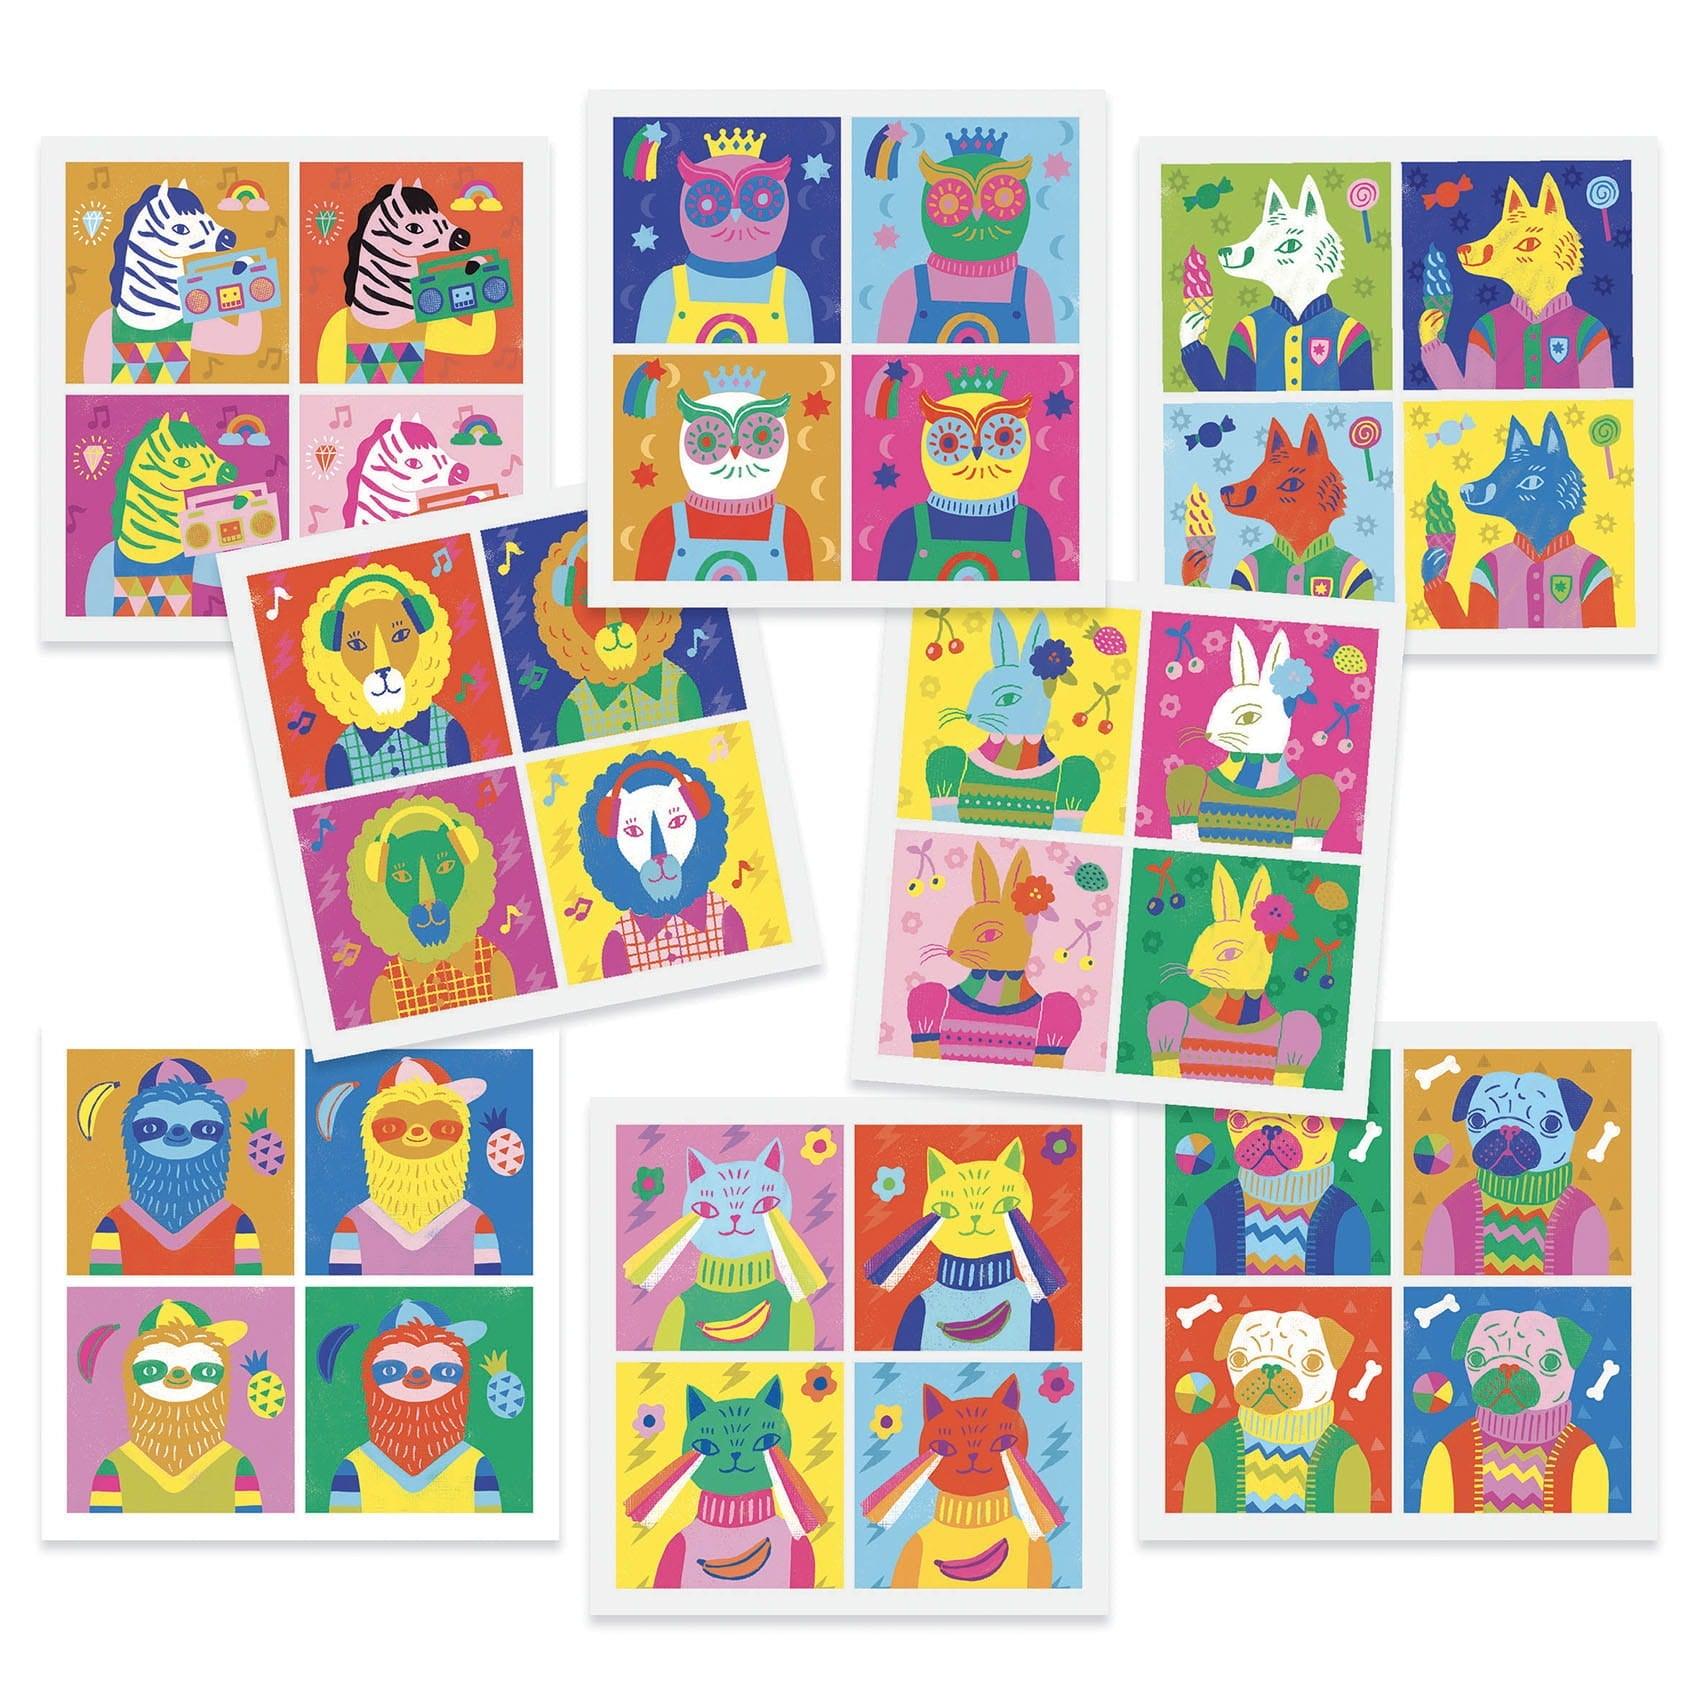 Djeco: zestaw artystyczny inspiracje Pop Art Inspired by Andy Warhol - Noski Noski